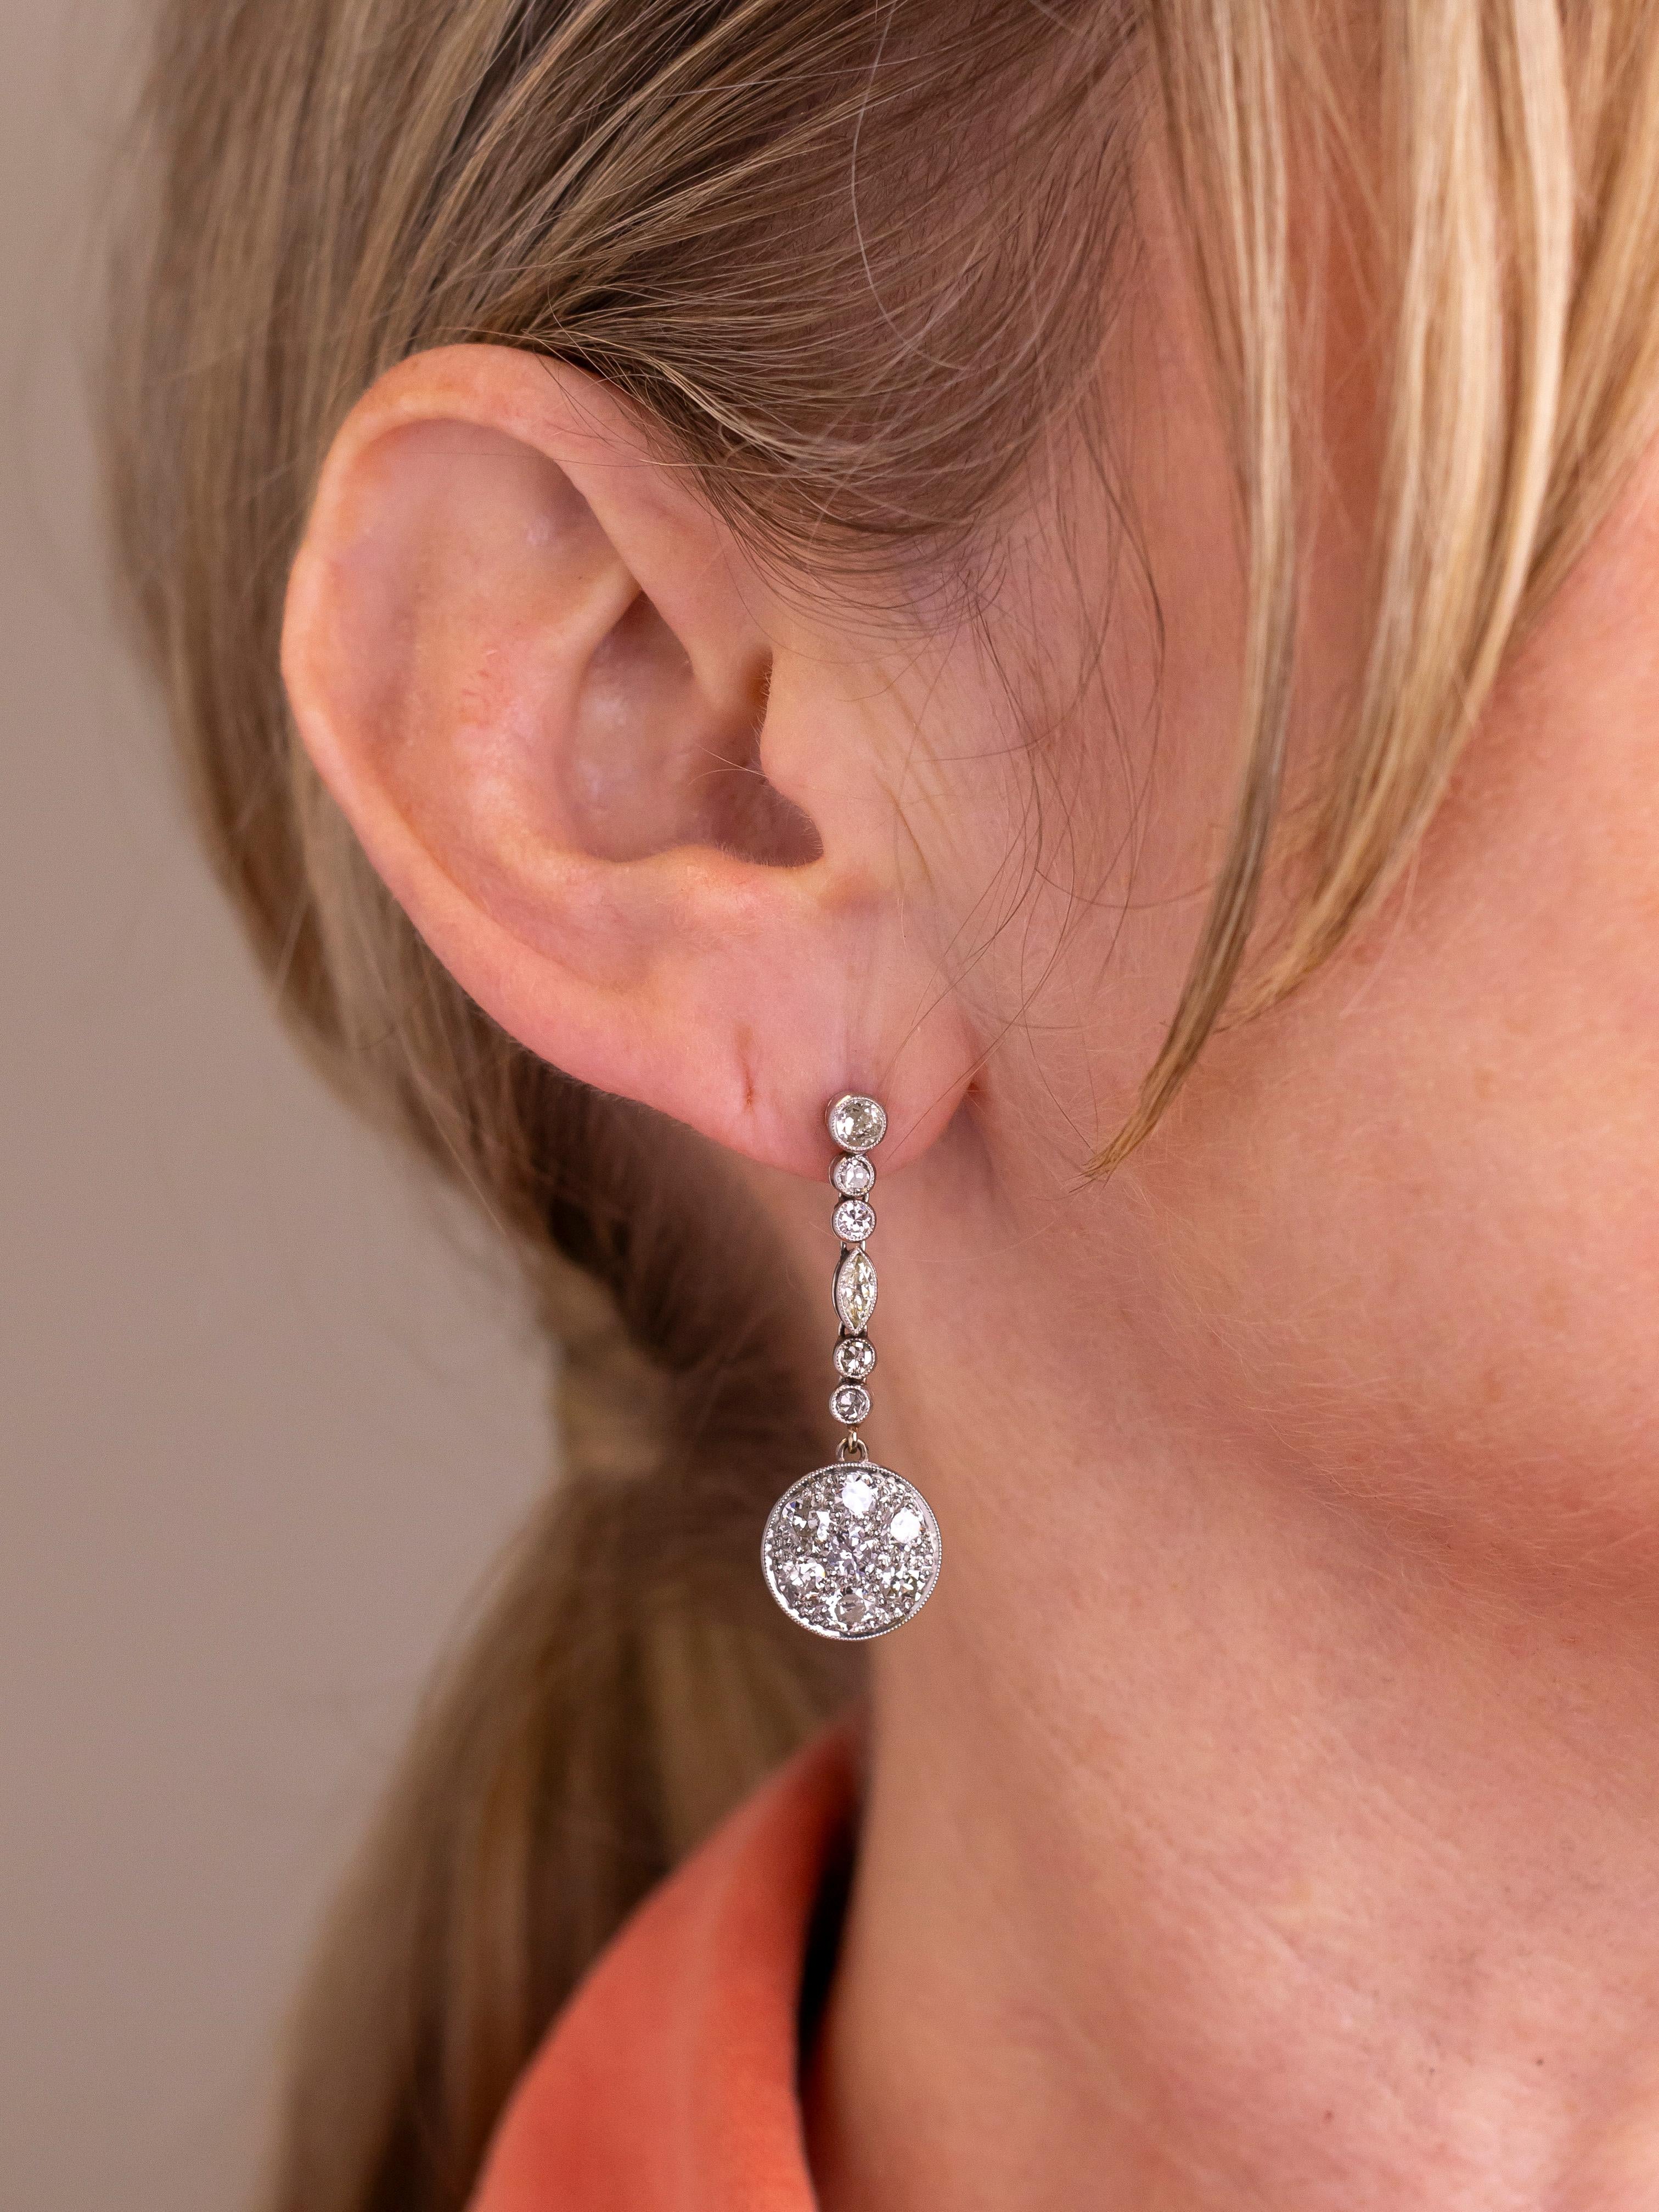 Dieses reizvolle Paar Ohrringe aus Platin und Diamanten stammt aus der Zeit des Art déco und wurde von Hand gefertigt. Die Ohrstecker haben ein Platingewinde und einen Schraubverschluss, was bedeutet, dass sie sehr sicher am Ohr sitzen. An der